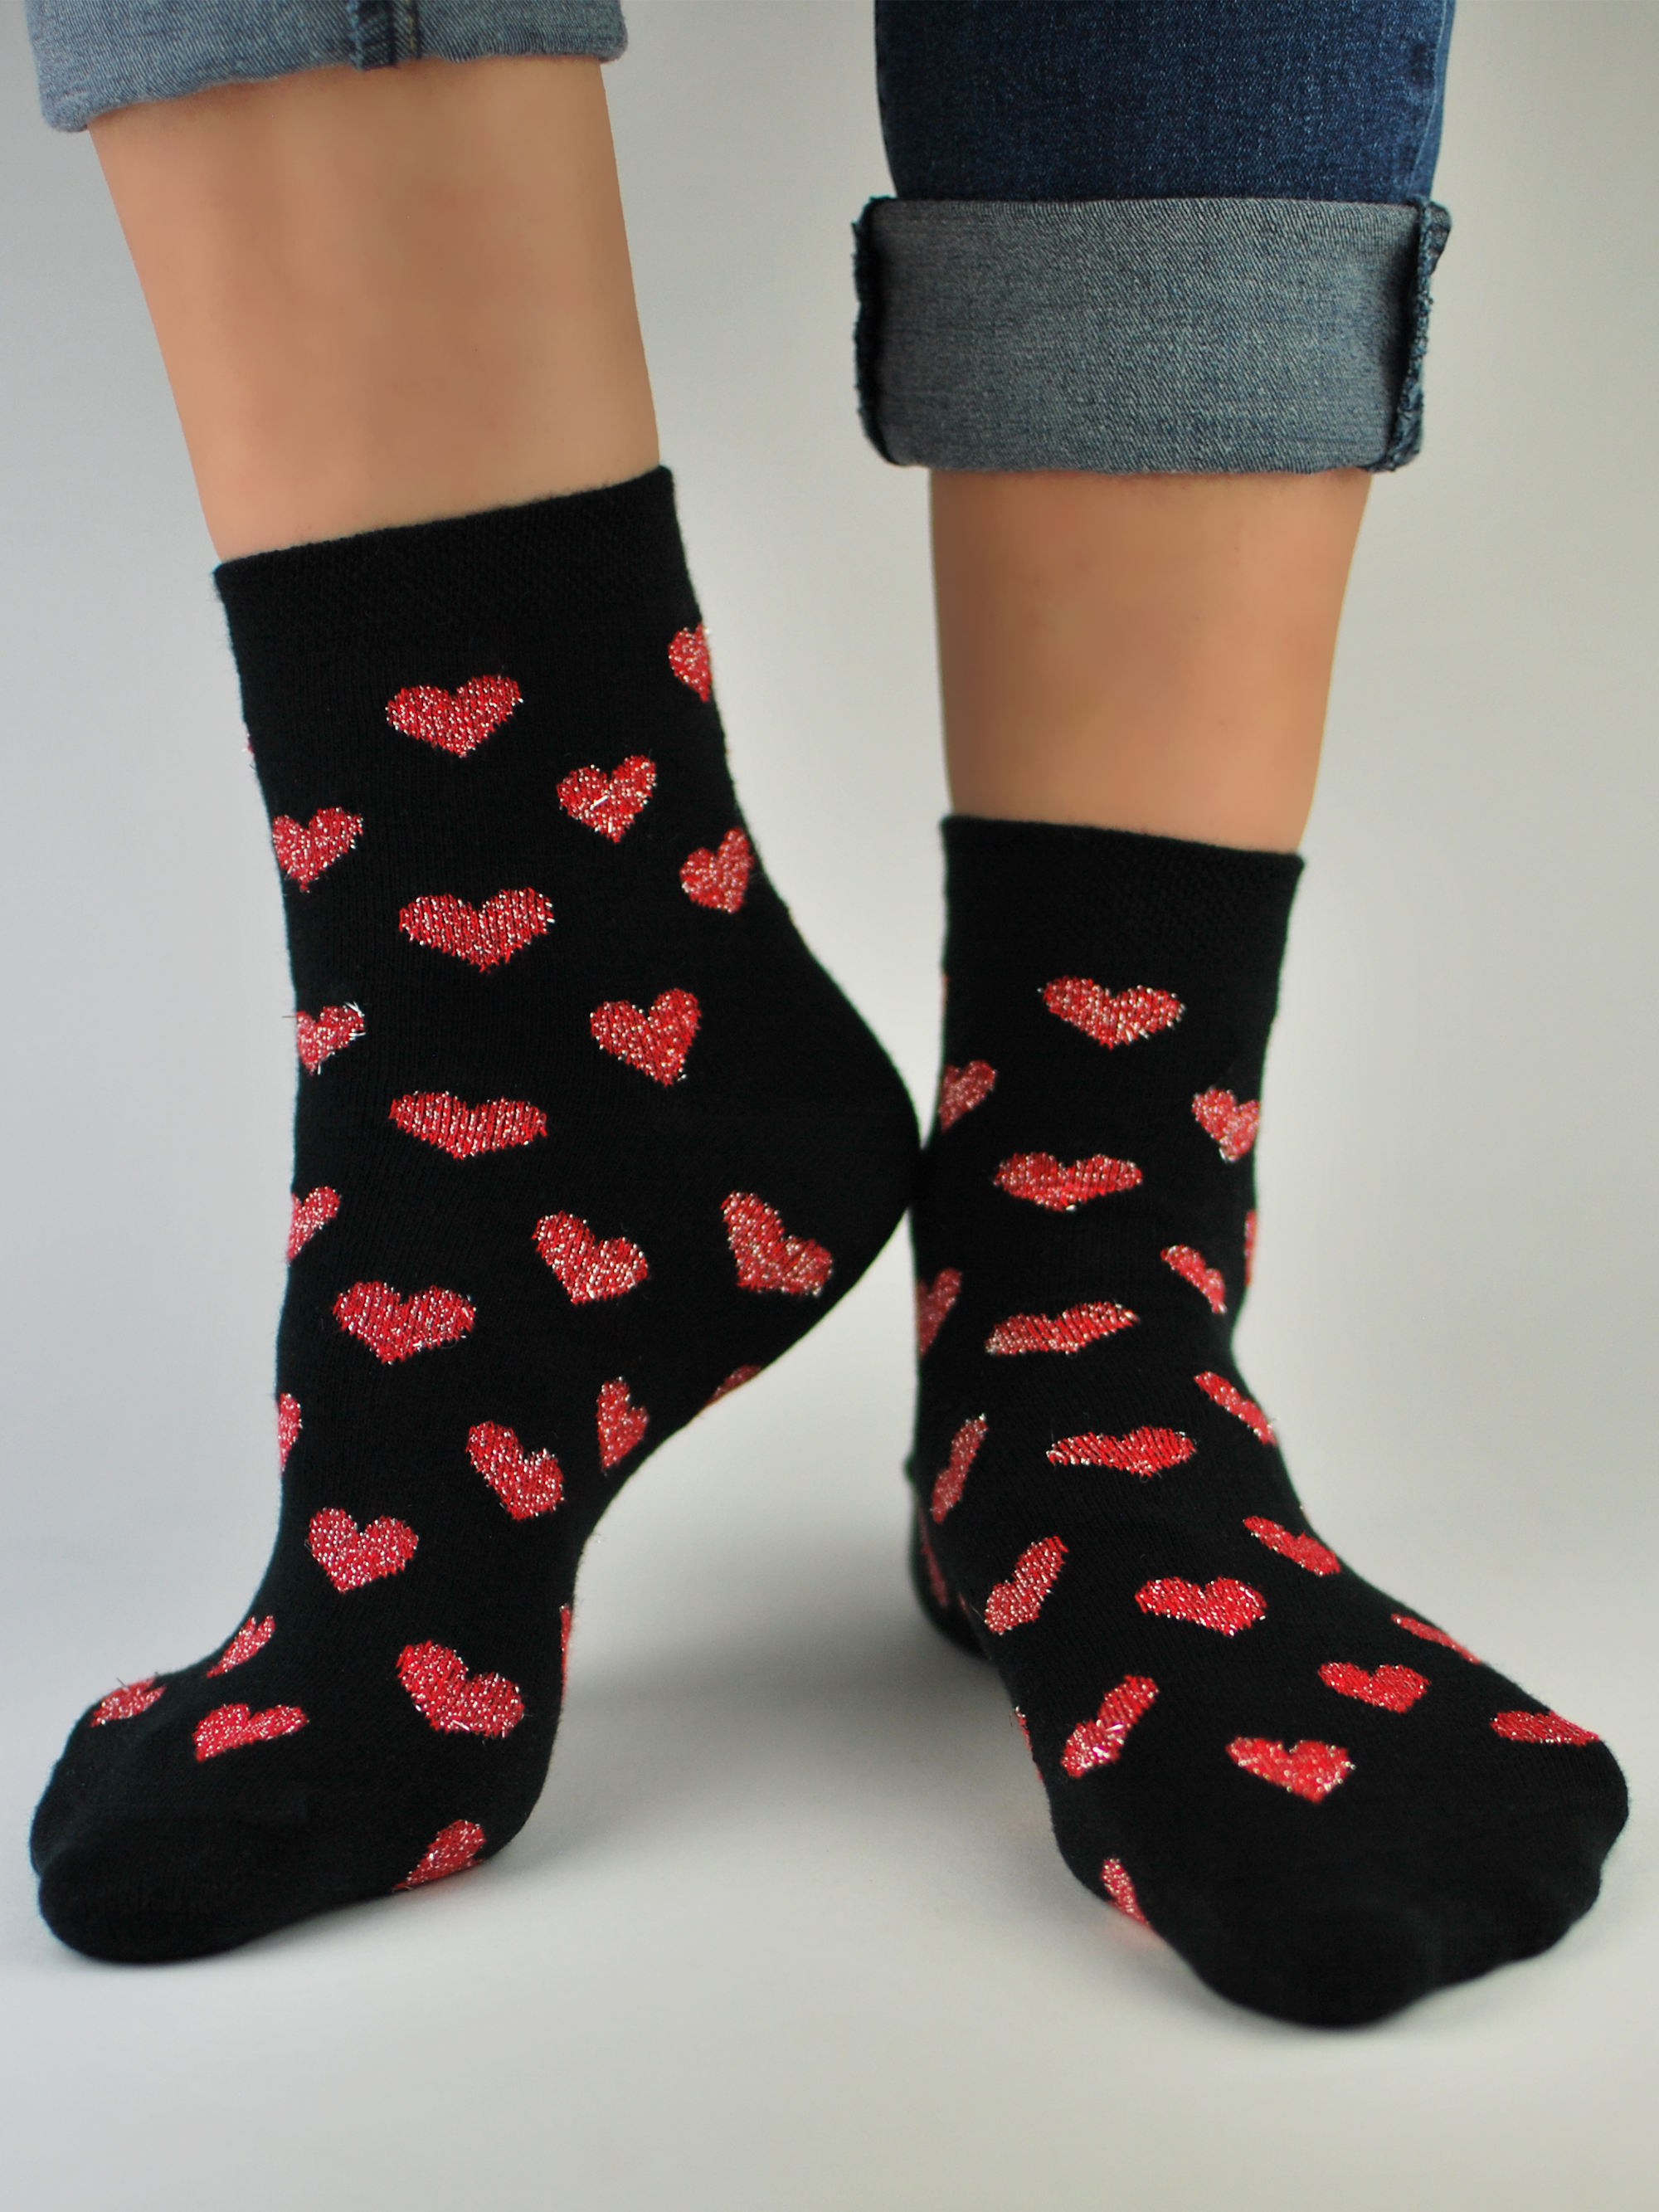 NOVITI Woman's Socks SB026-W-04